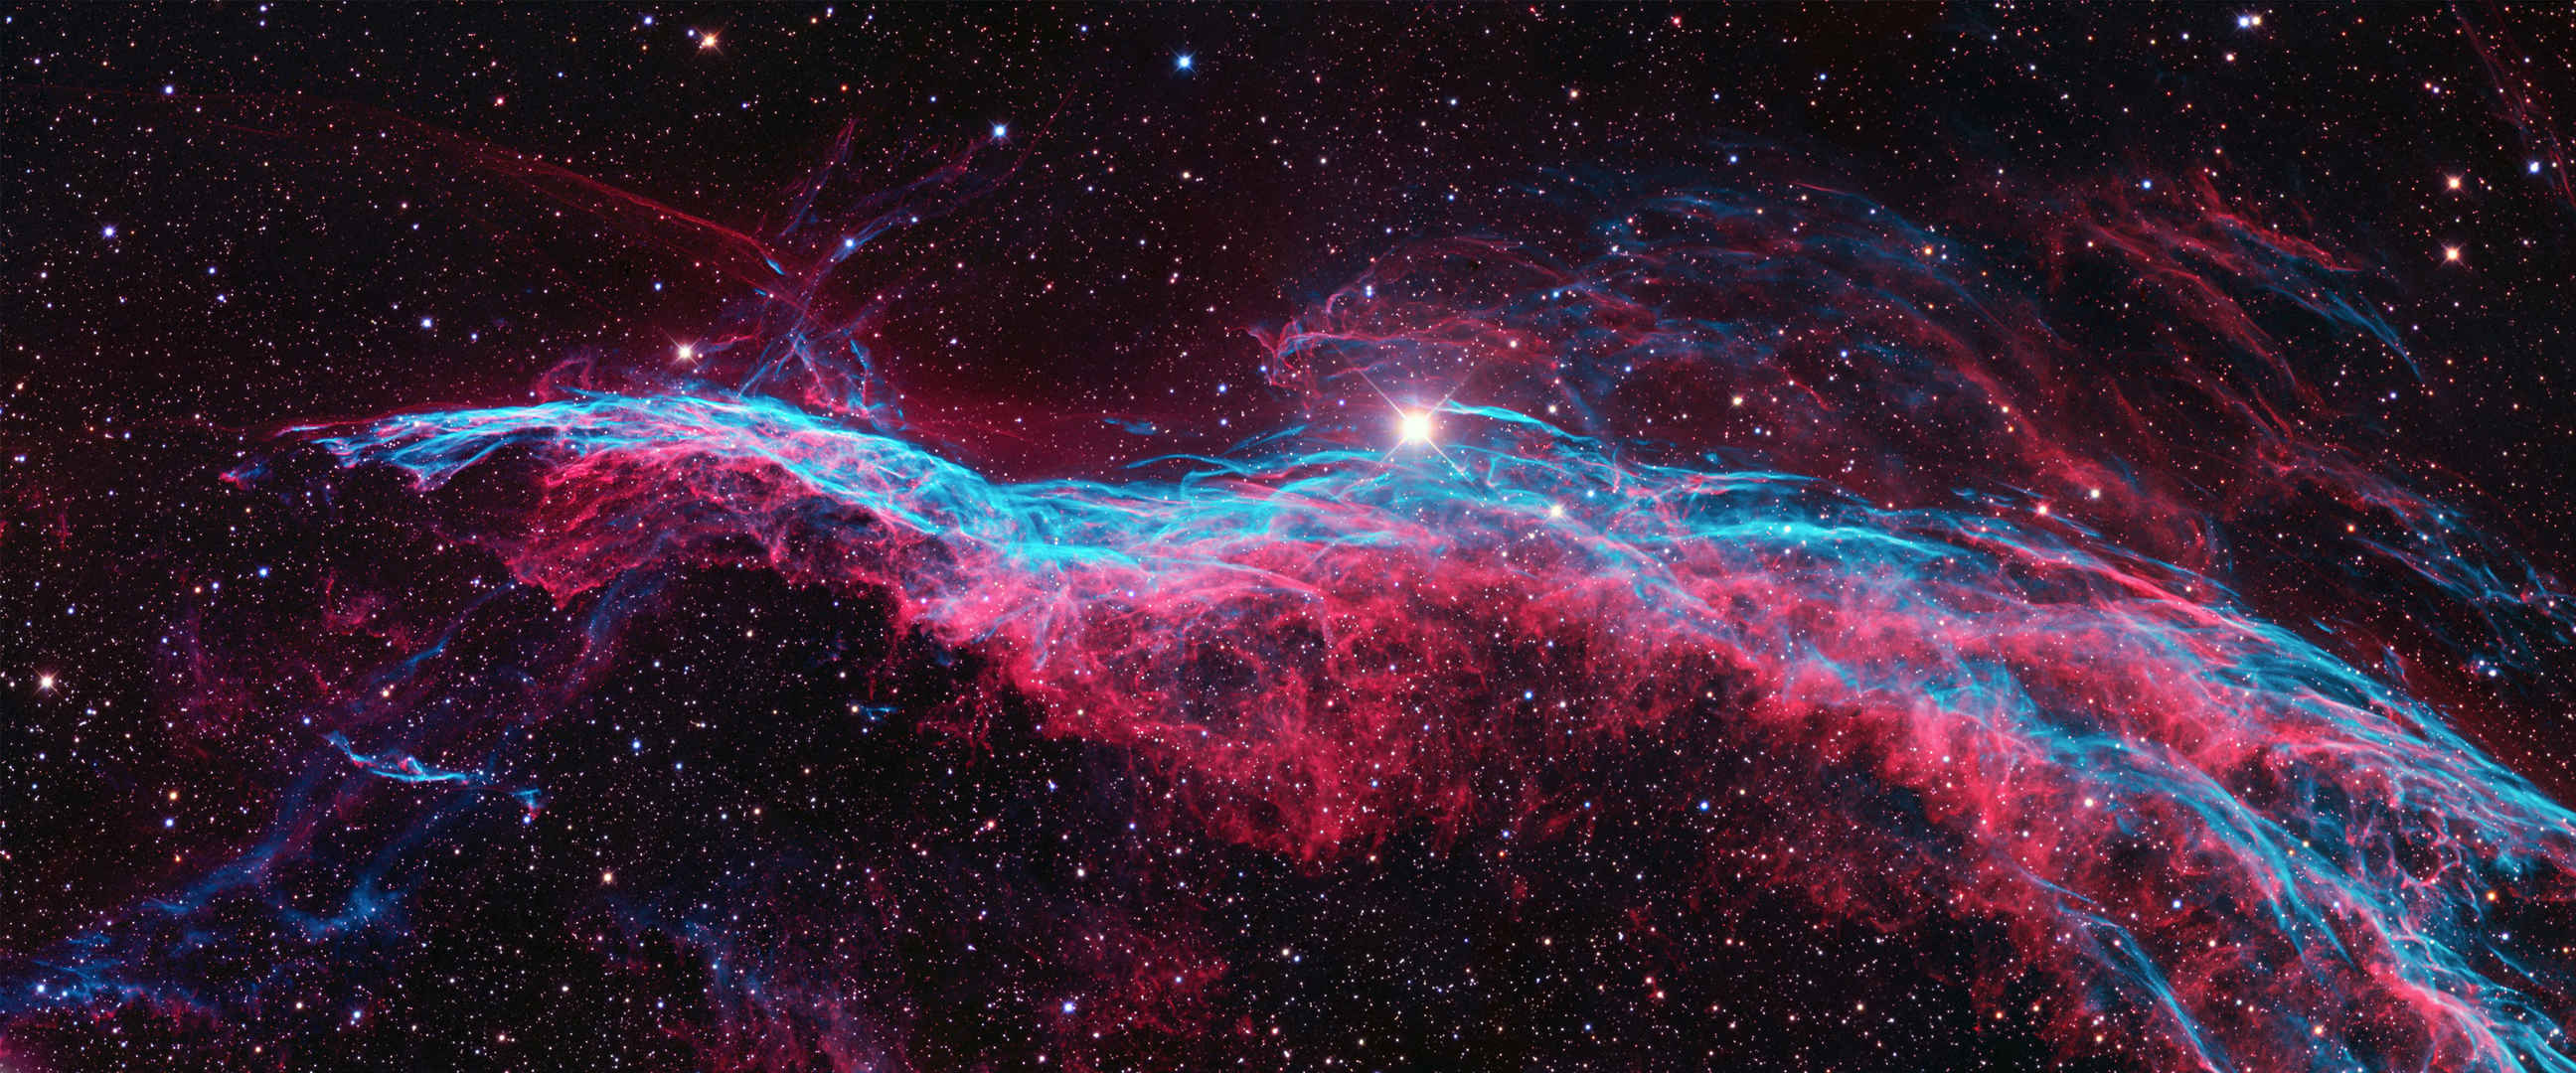 太空中紫红色云雾唯美图片